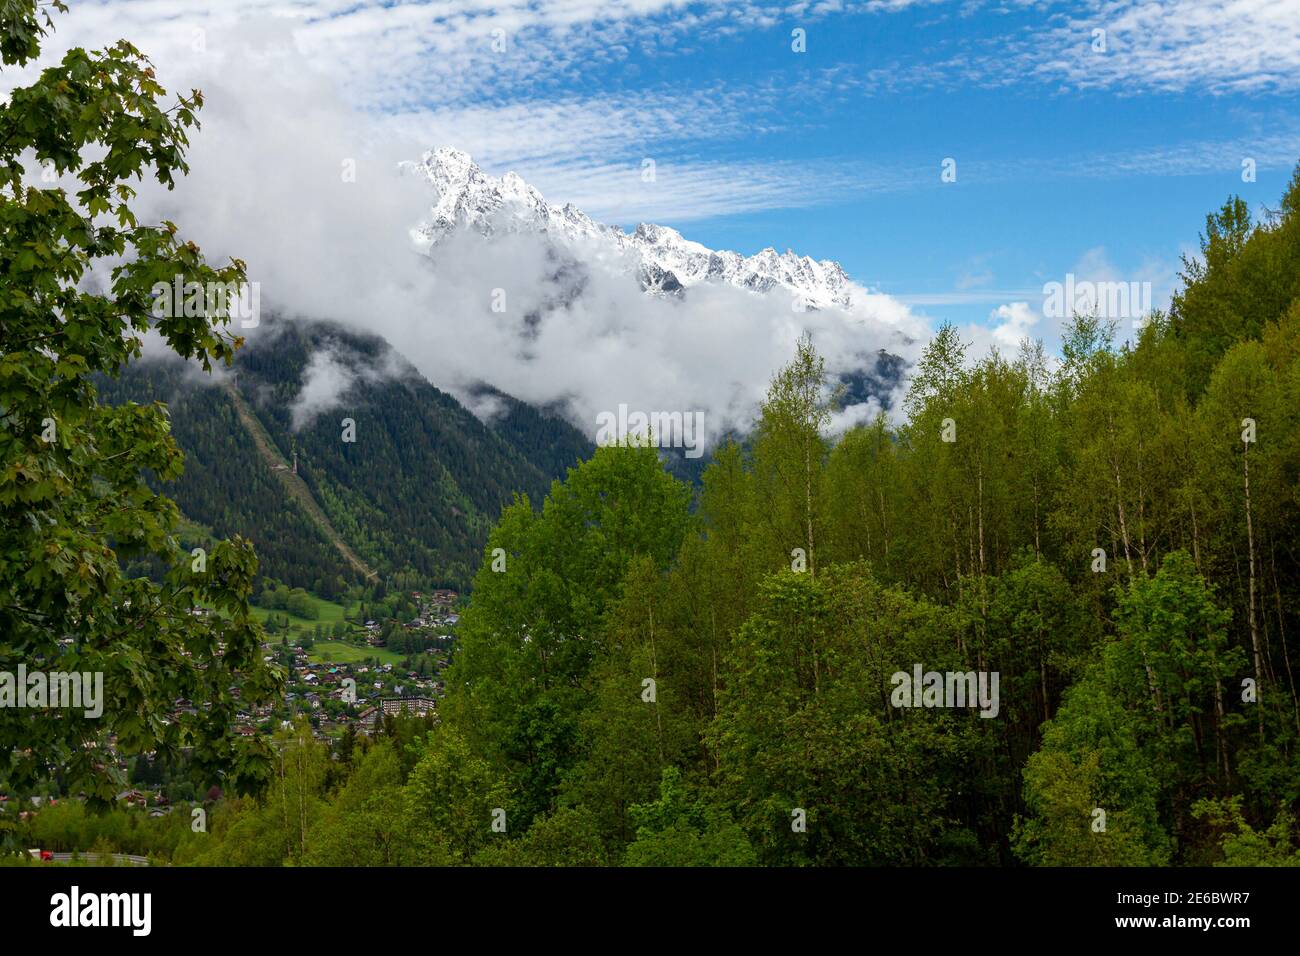 Blick auf die französischen Alpen am Gipfel des Mont Blanc am Eingang des Mont Blanc Tunnels zwischen Frankreich und Italien. Es gibt einen dichten Wald, Schnee Stockfoto